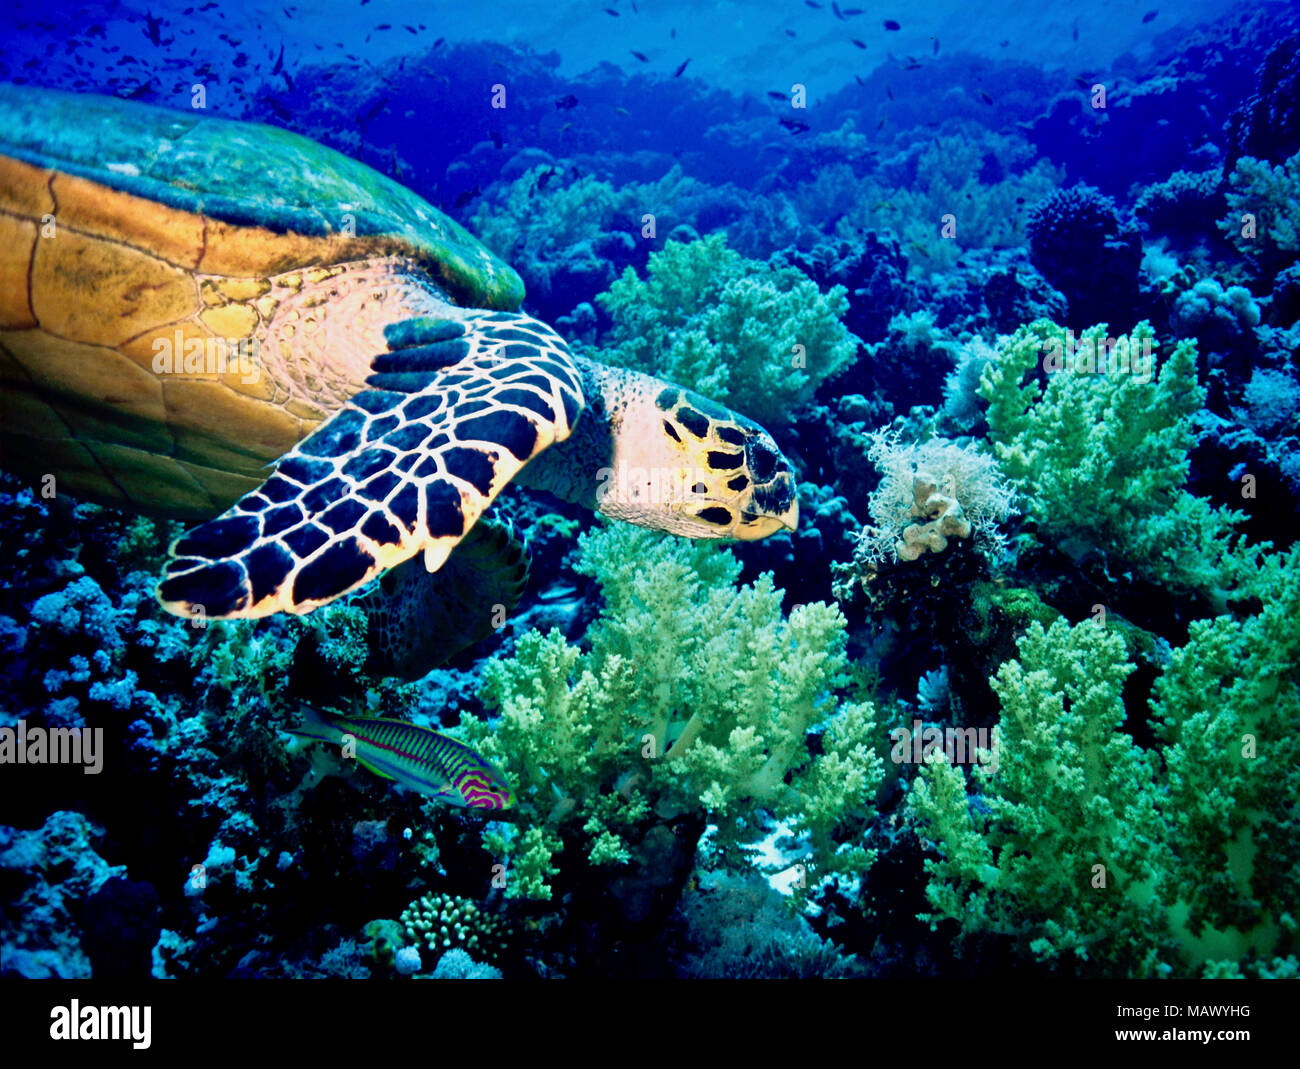 Una tartaruga embricata (Eretmochelys impricata) con un insolito wrasse companion (Thalassoma klunzingeri: 20 cm.). La tartaruga era alla ricerca di un gustoso soft coral. Il beige coralli molli stanno diventando sempre più diffuse in Mar Rosso; come le mie immagini HNB2BP e HNB2BK suggeriscono, hawksbill tartarughe preferiscono la varietà rossa! Questi rettili sono ormai rari: elencate come "in pericolo critico' dalla IUCN. Essi diventano impigliati nelle reti da pesca, sono negativamente influenzati dal cambiamento climatico e inquinamento, hanno i loro siti di nidificazione eliminato mediante sviluppo costiero e, ultimo ma non ultimo, vengono catturate per cibo. Mar Rosso egiziano. Foto Stock